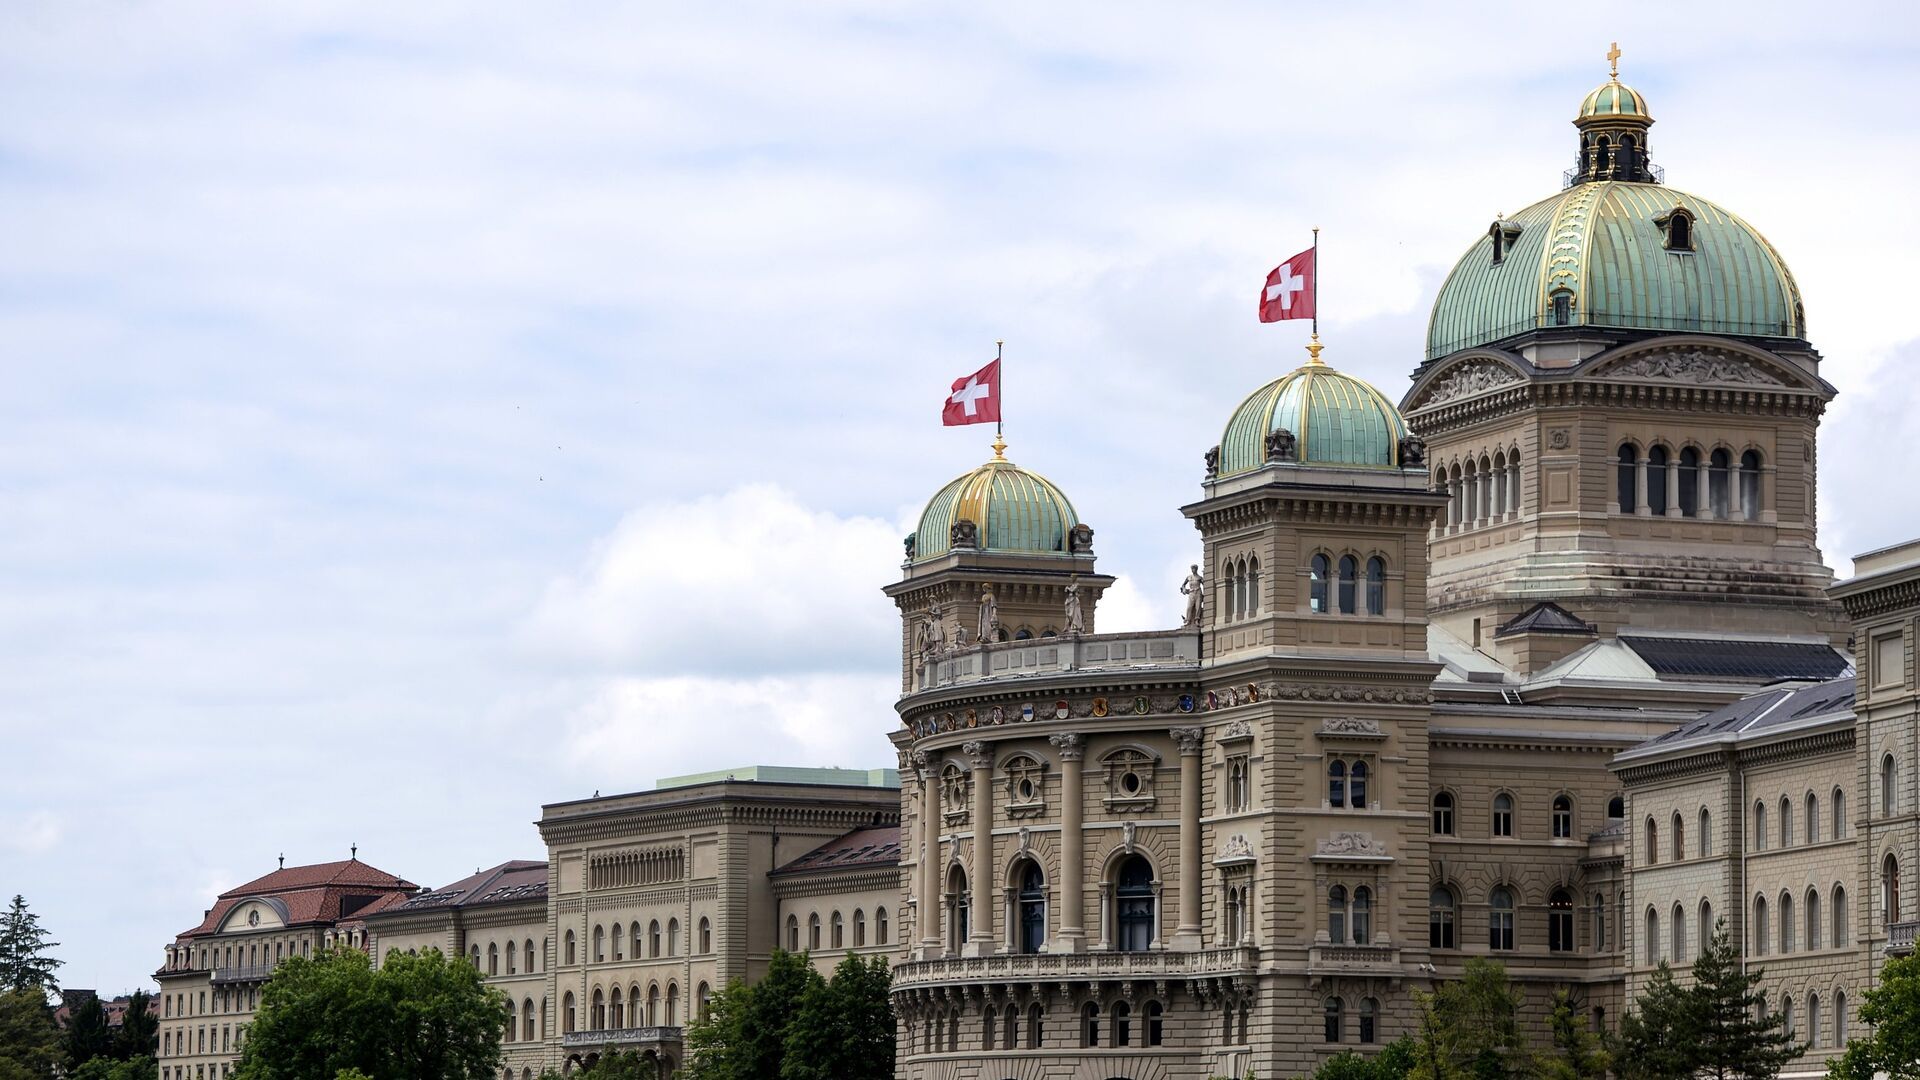 Федеральный дворец (парламент) в городе Берн. Федеральный дворец в Берне Швейцария. Парламент Швейцарии. Федеральный совет Швейцарии здание. Швейцария против санкций